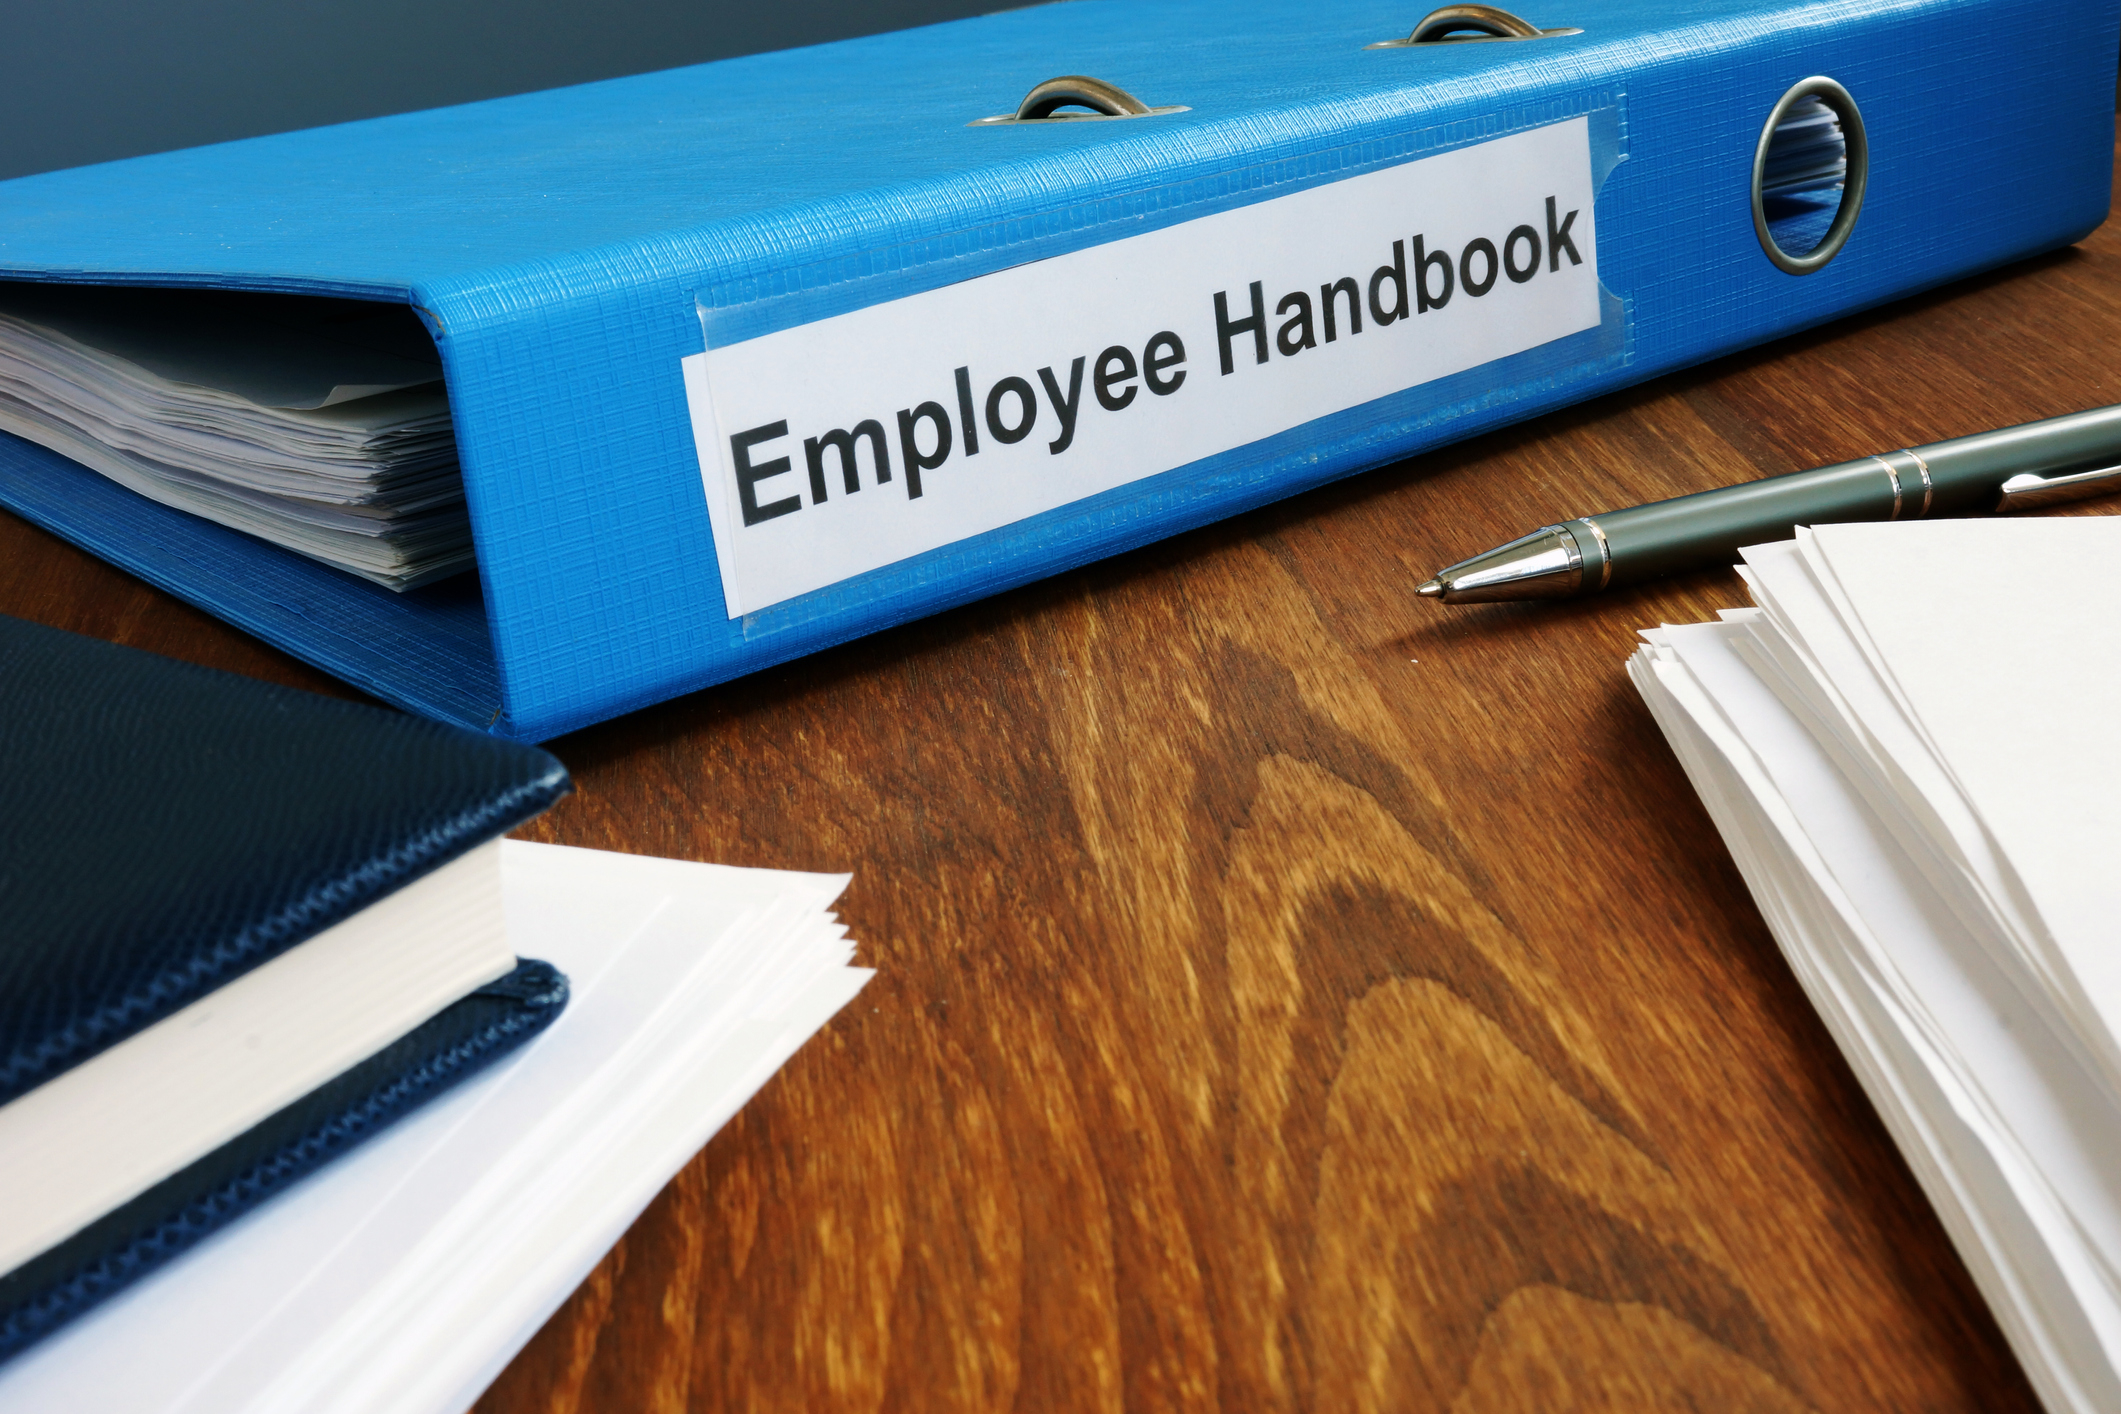 Employee handbook binder